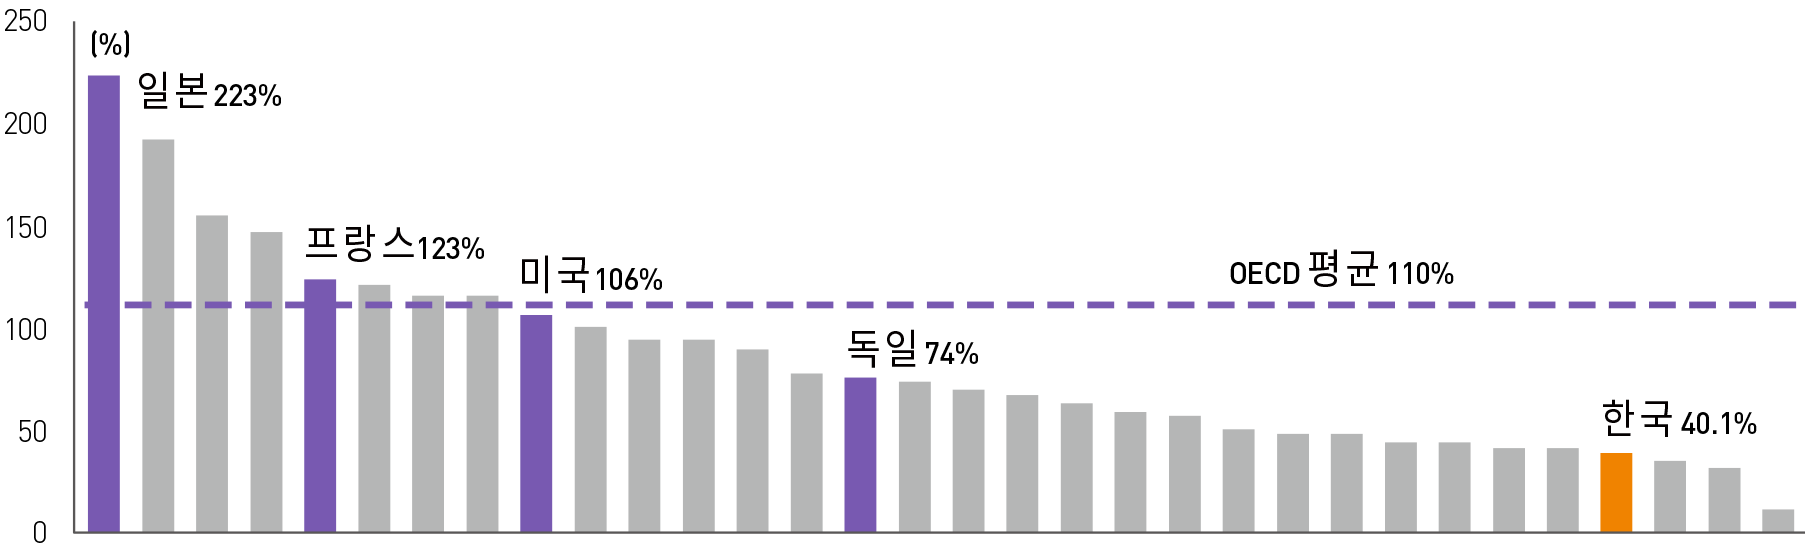 OECD 국가별 GDP 대비 일반정부 부채(D2) 비율(’17년 기준)그래프 이미지